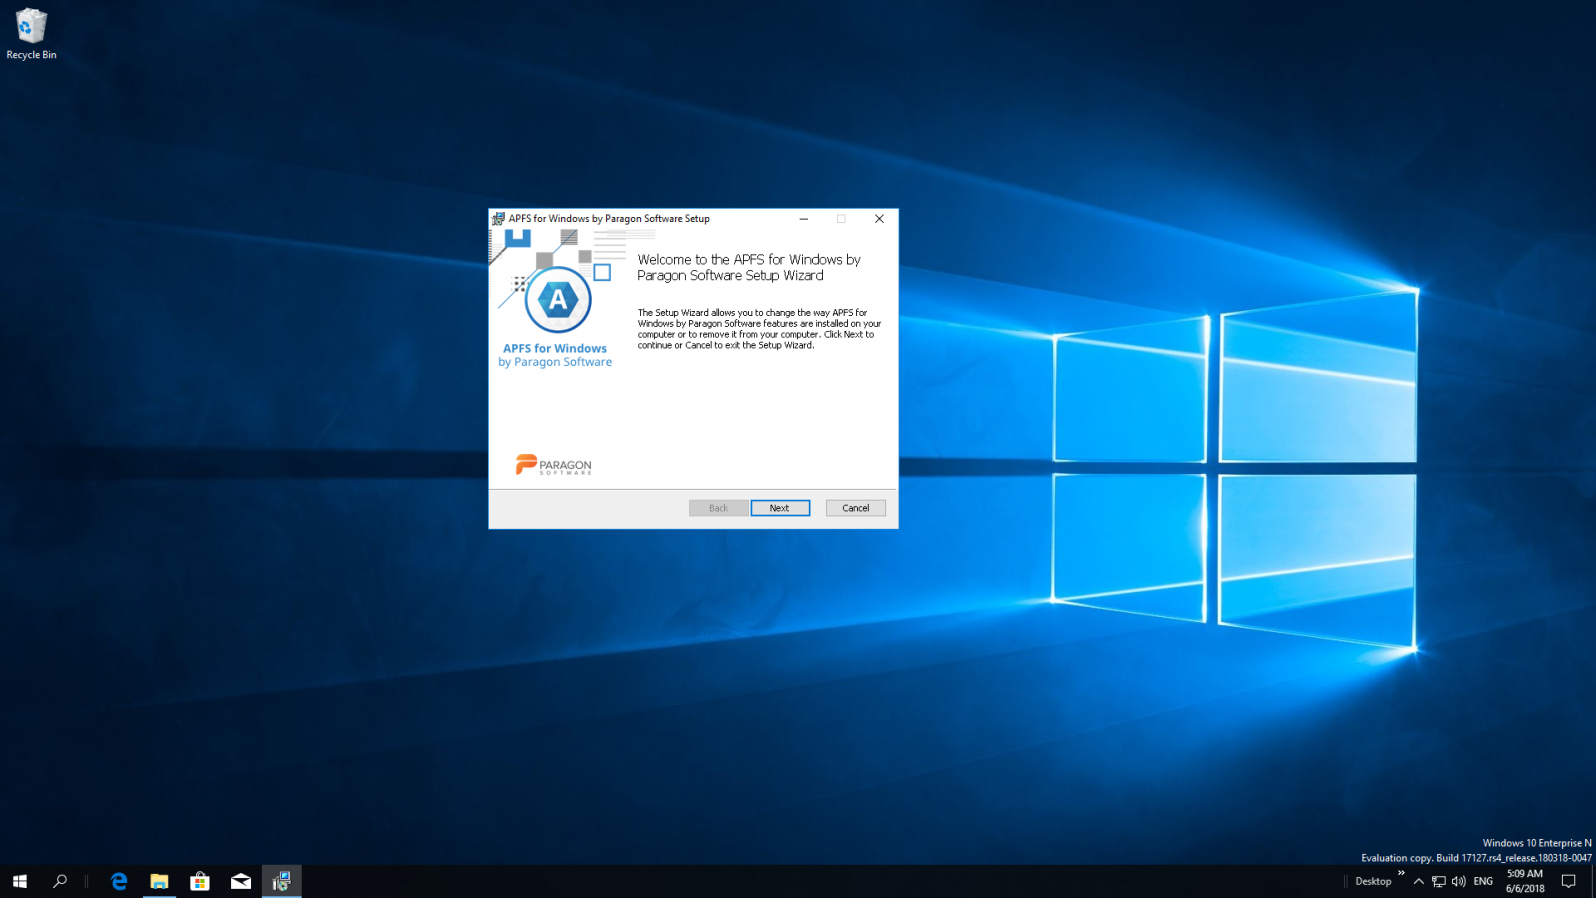 APFS for Windows by Paragon Software. Lea y guarde archivos en unidades HDD, SSD o flash en Windows. Captura de pantalla.